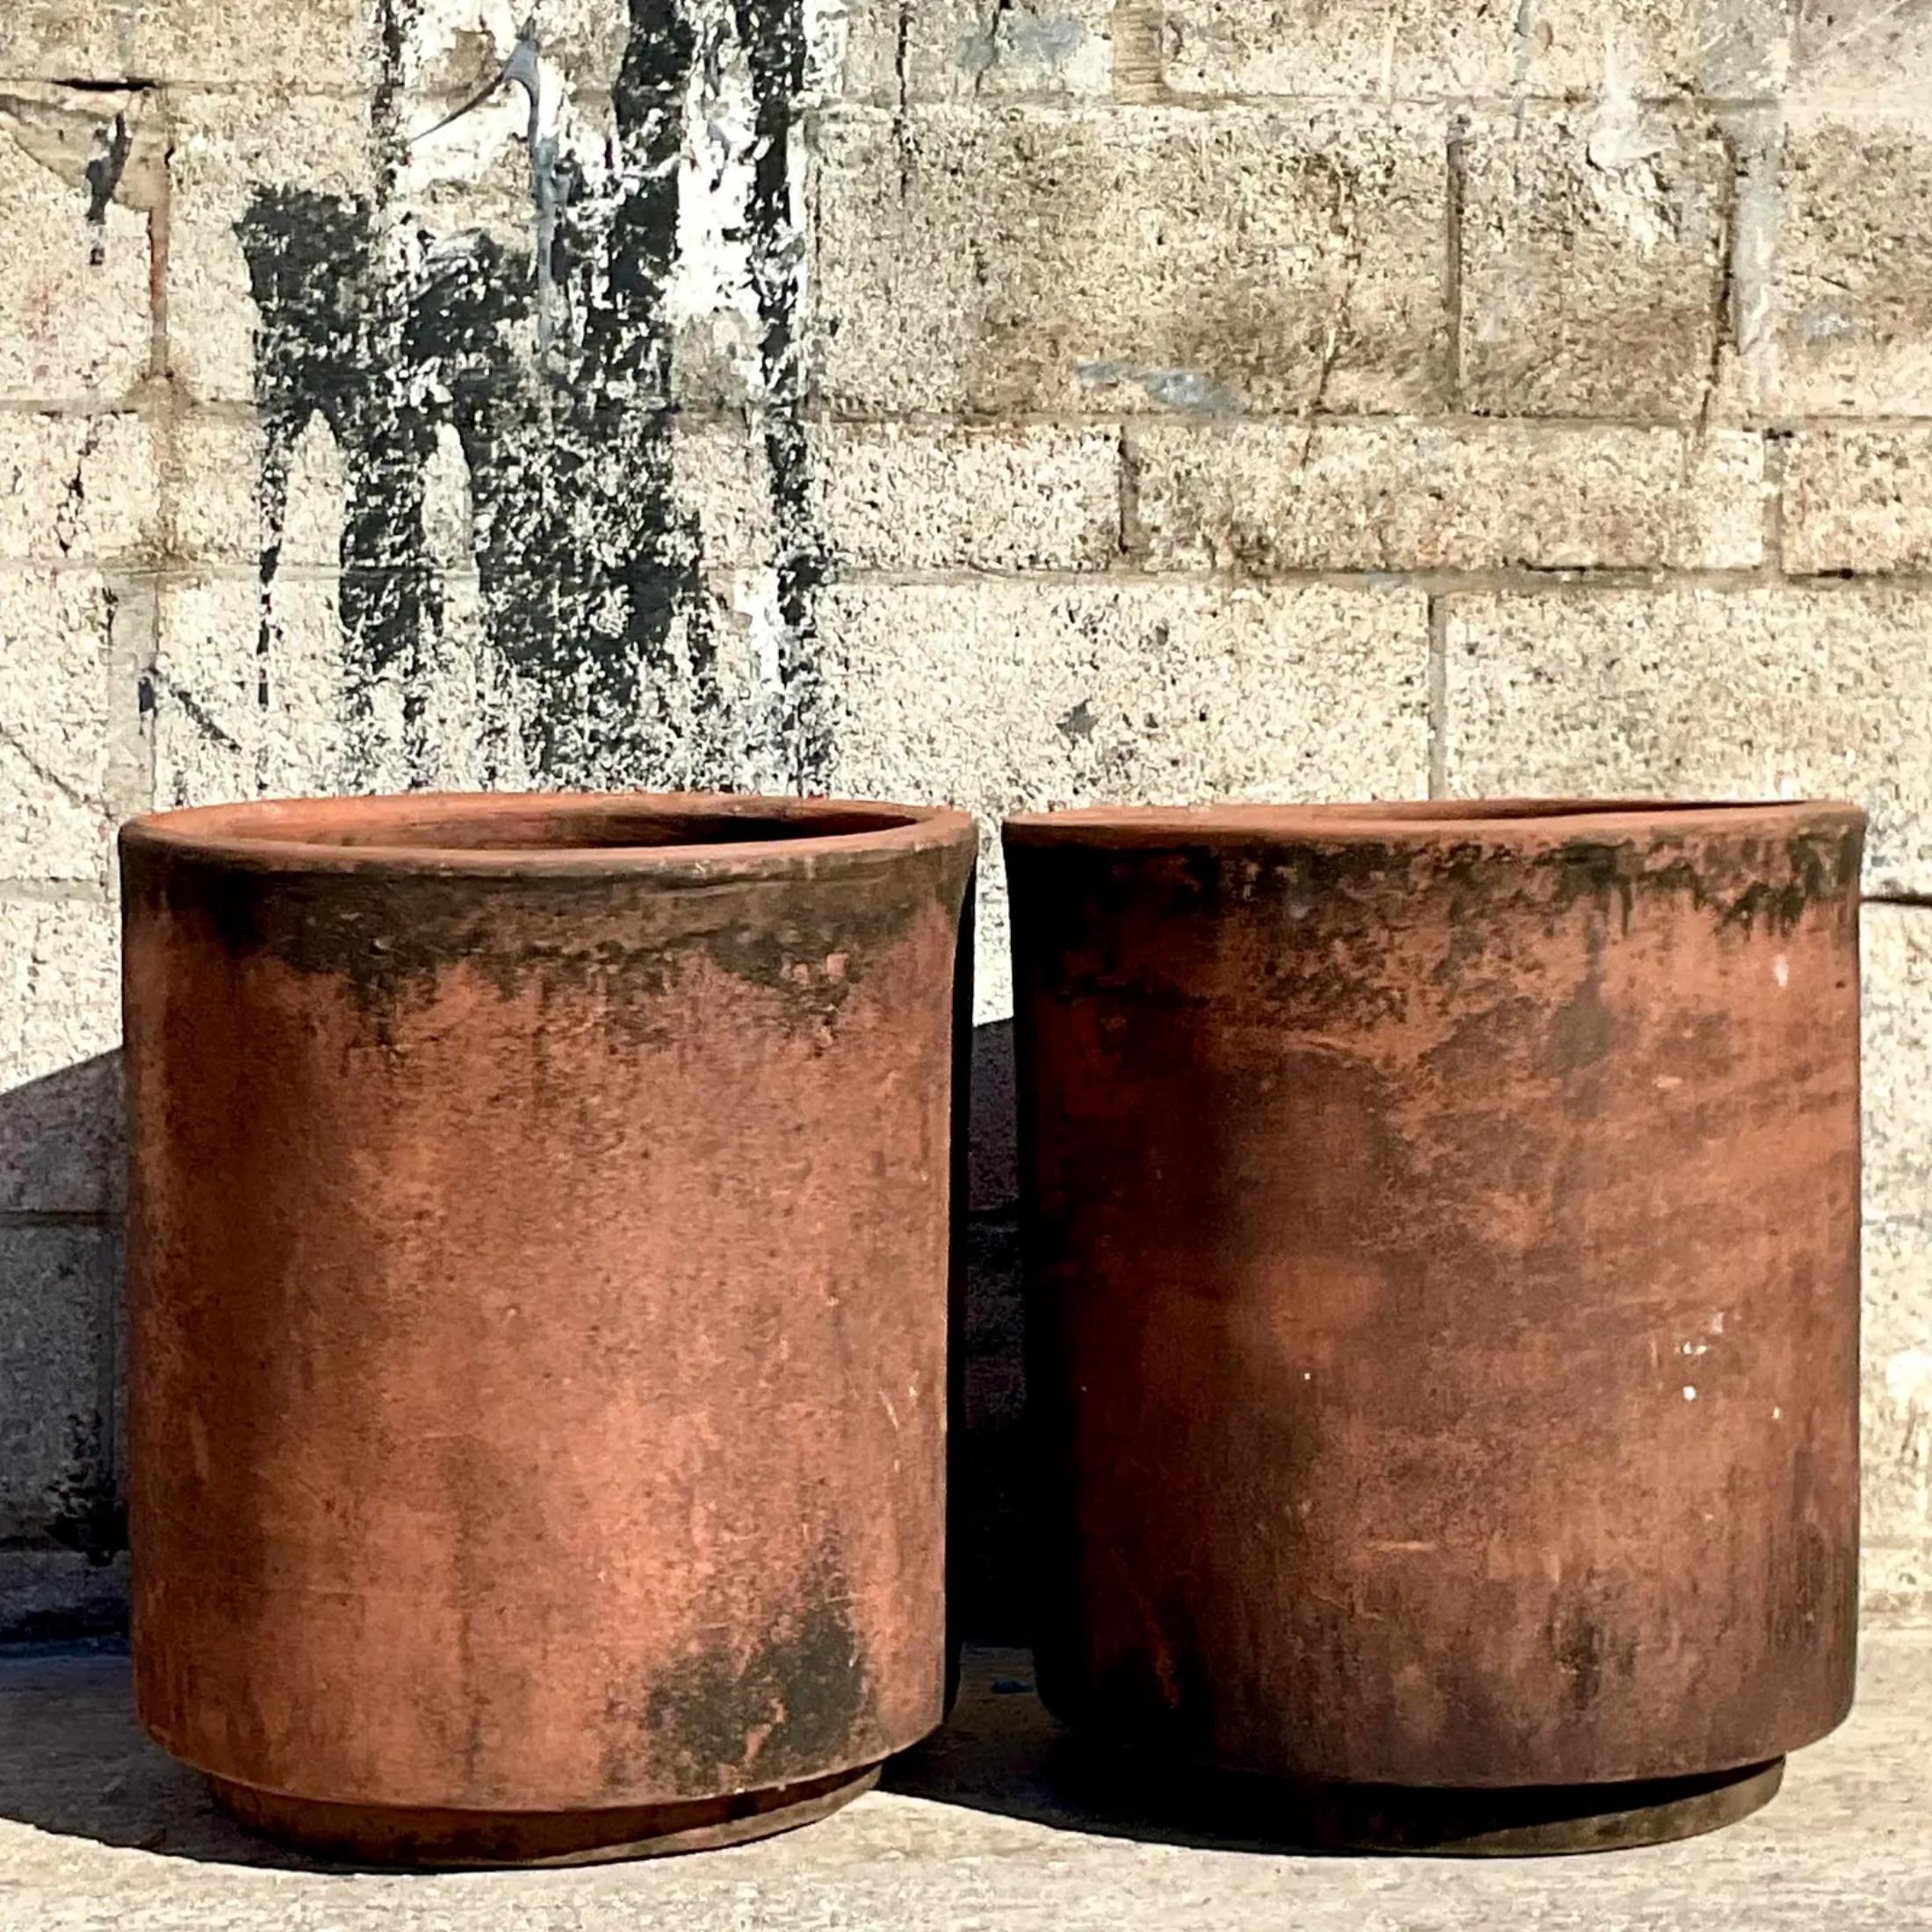 Les fabuleuses jardinières cylindriques vintage en terre cuite qui se présentent par paire. Acquis dans une propriété de Palm Beach.

